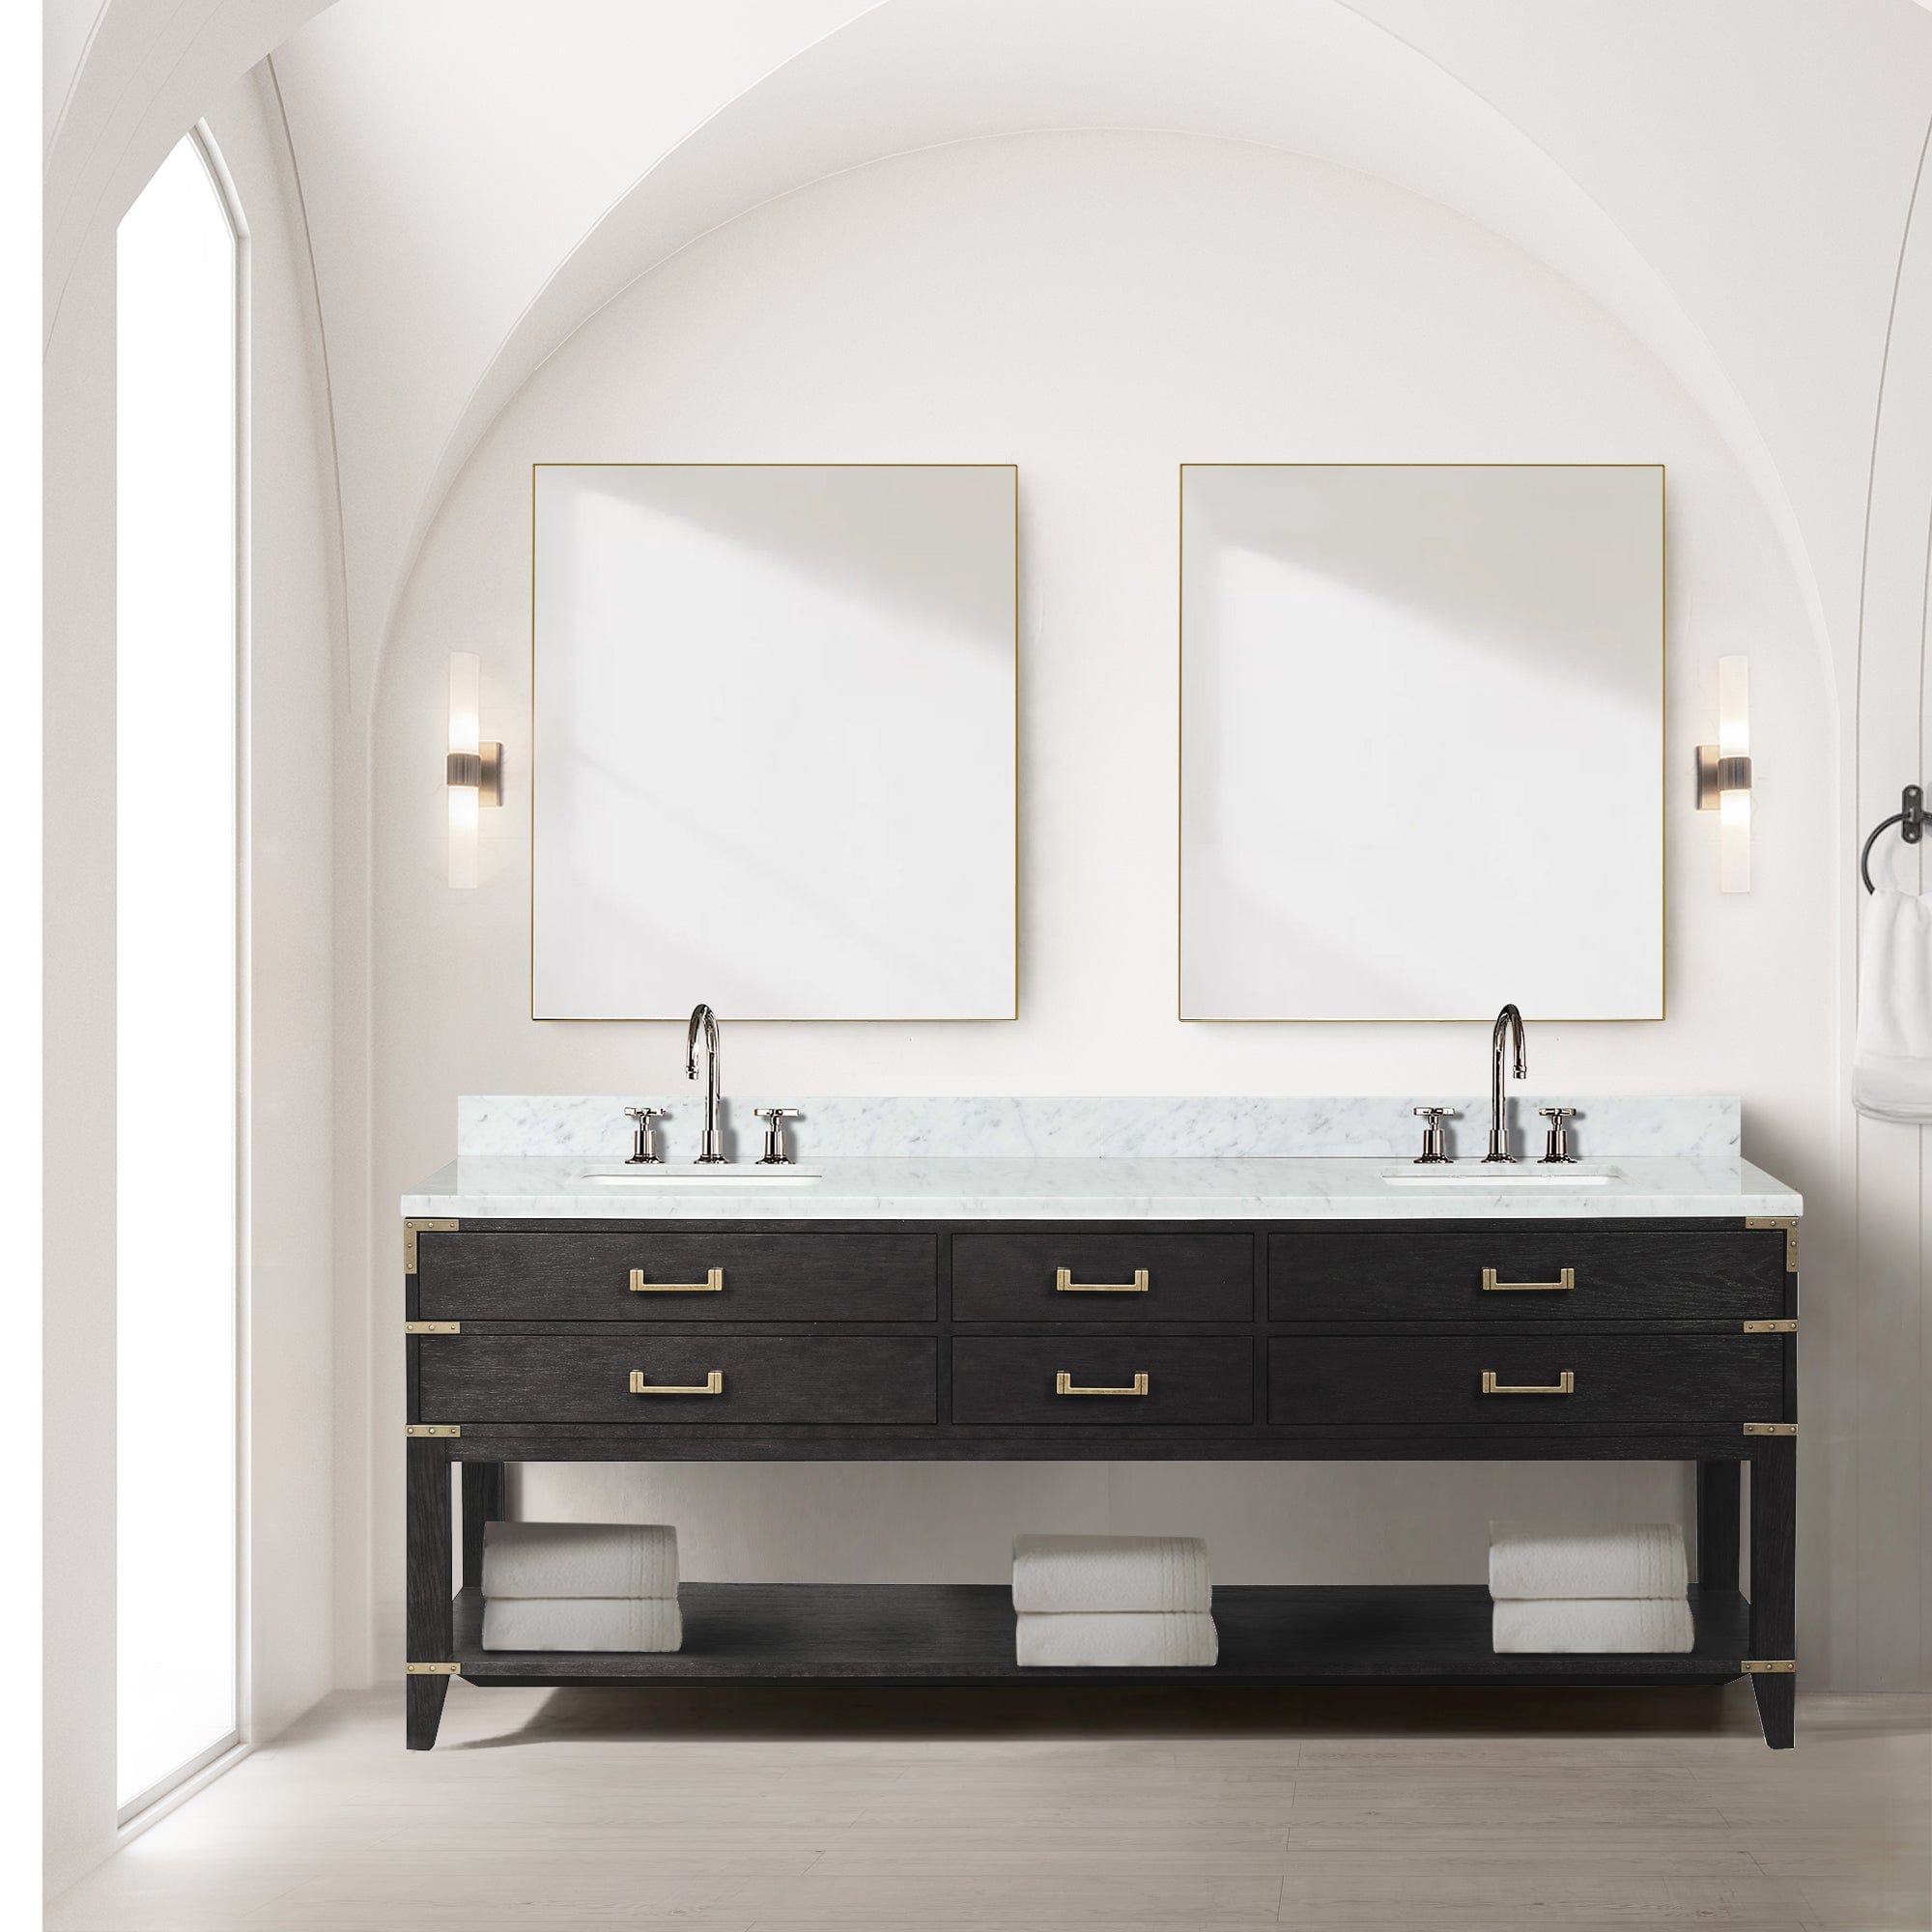 Bell + Modern Bathroom Vanity 84